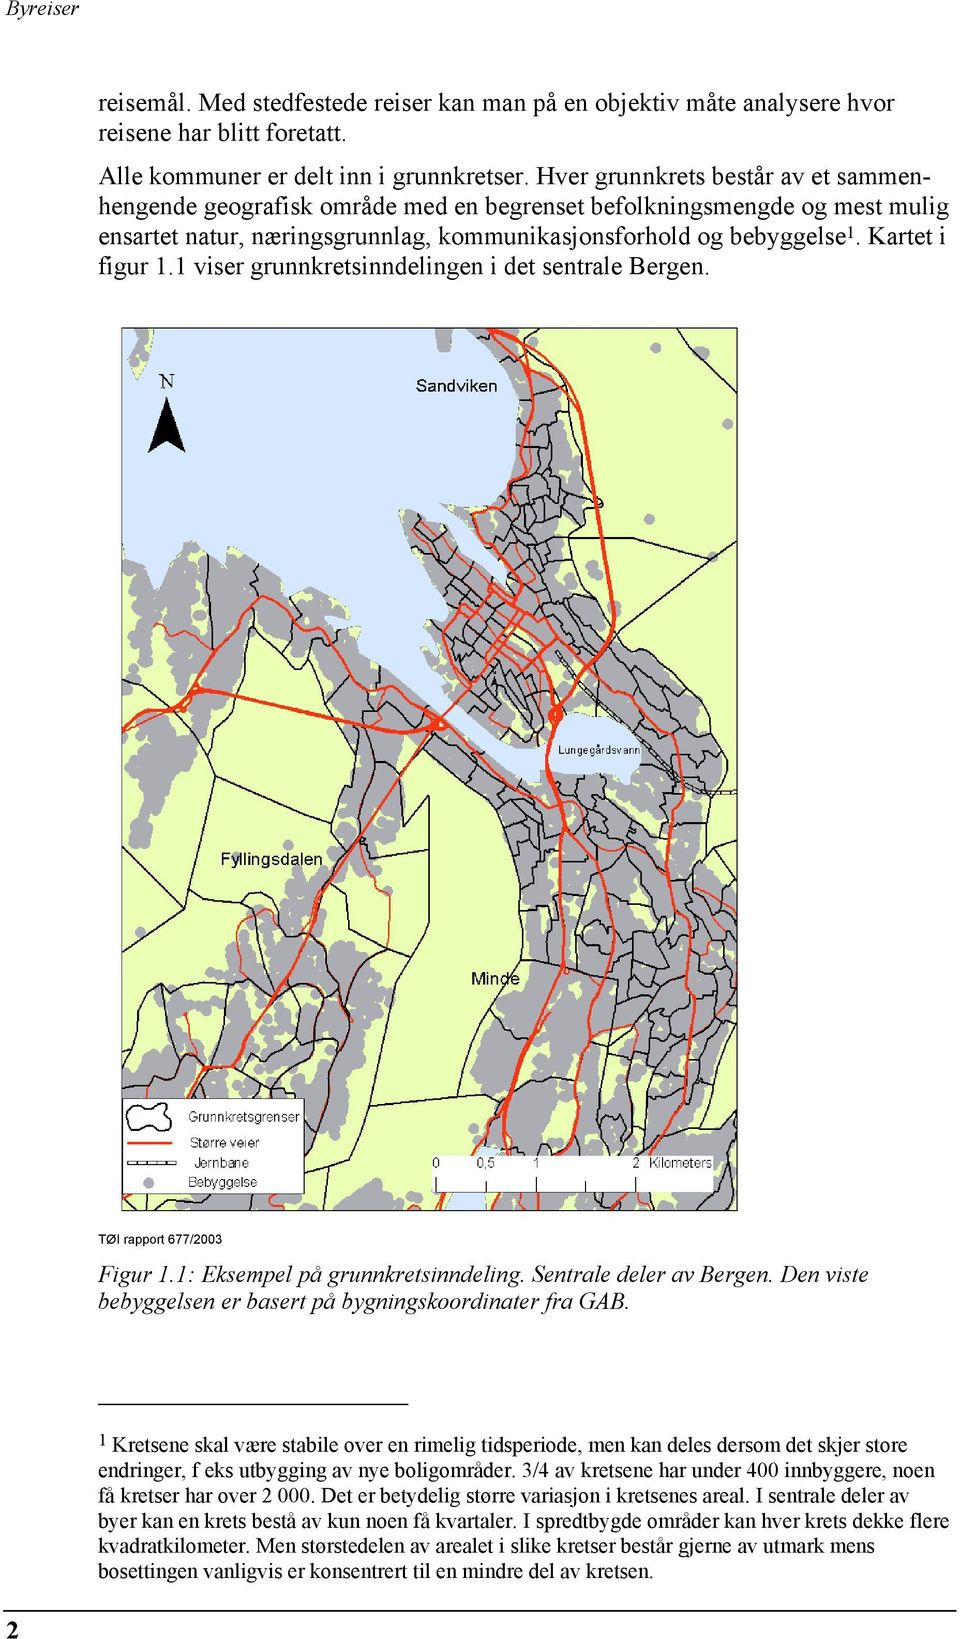 1 viser grunnkretsinndelingen i det sentrale Bergen. Figur 1.1: Eksempel på grunnkretsinndeling. Sentrale deler av Bergen. Den viste bebyggelsen er basert på bygningskoordinater fra GAB.